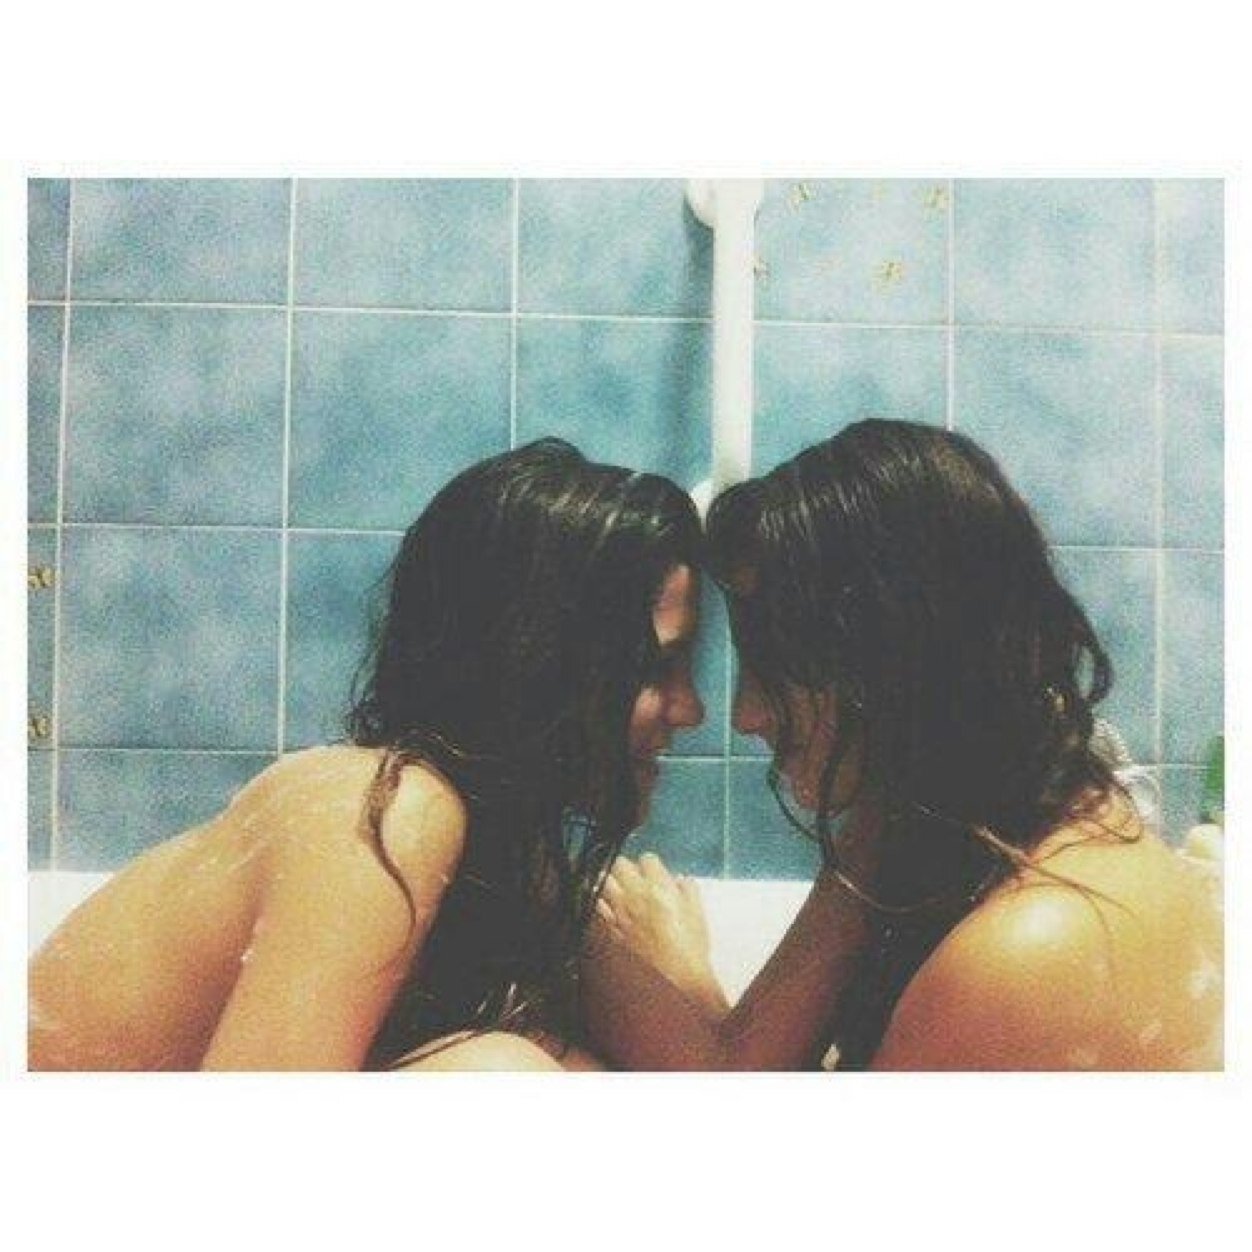 лесби целуются в туалете фото 95